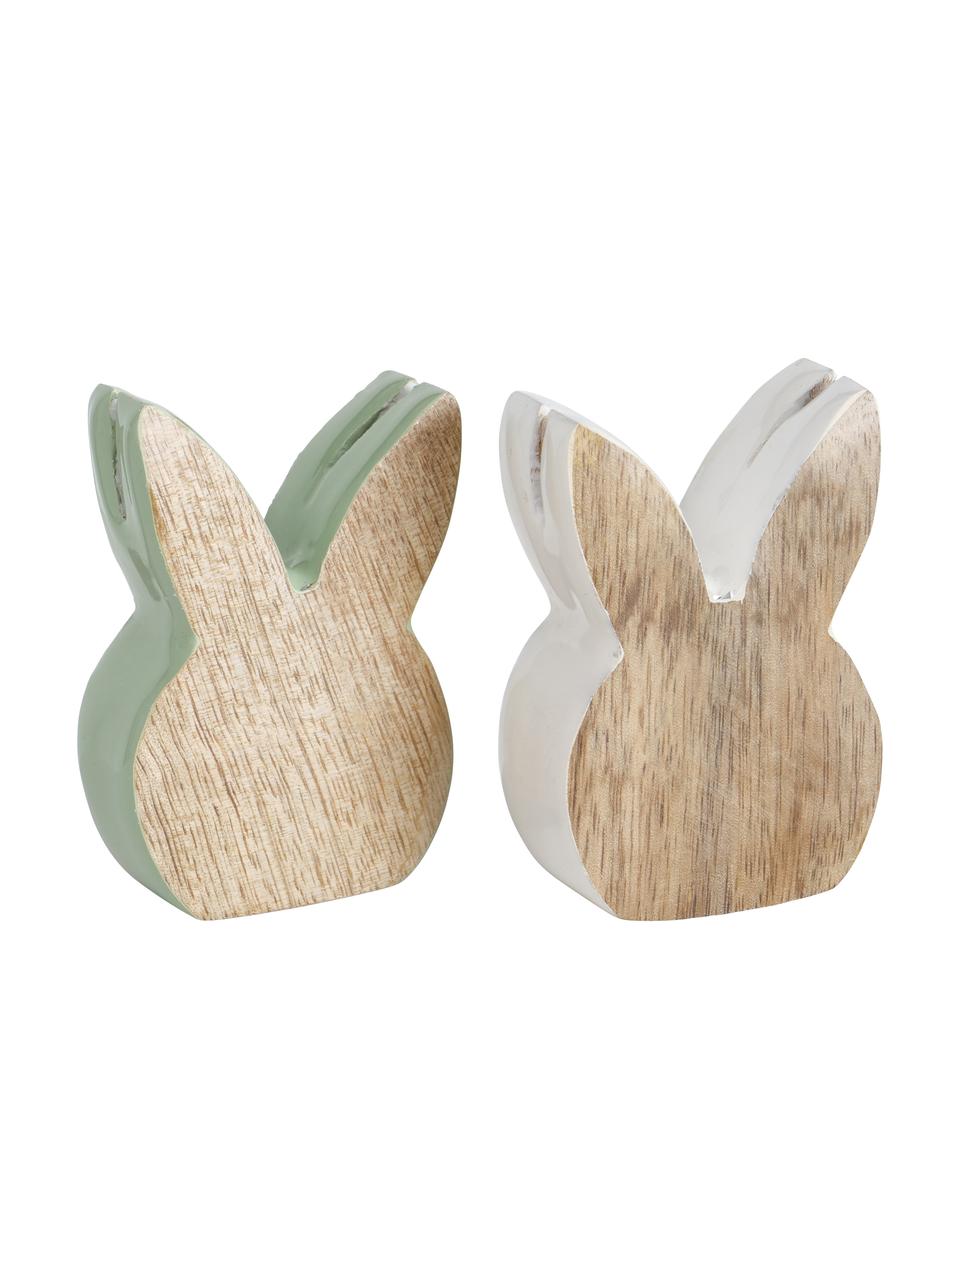 Objet déco lapin de Pâques en bois Liloja, 2 élém., Bois, enduit, Bois, vert, blanc, larg. 5 x haut. 7 cm